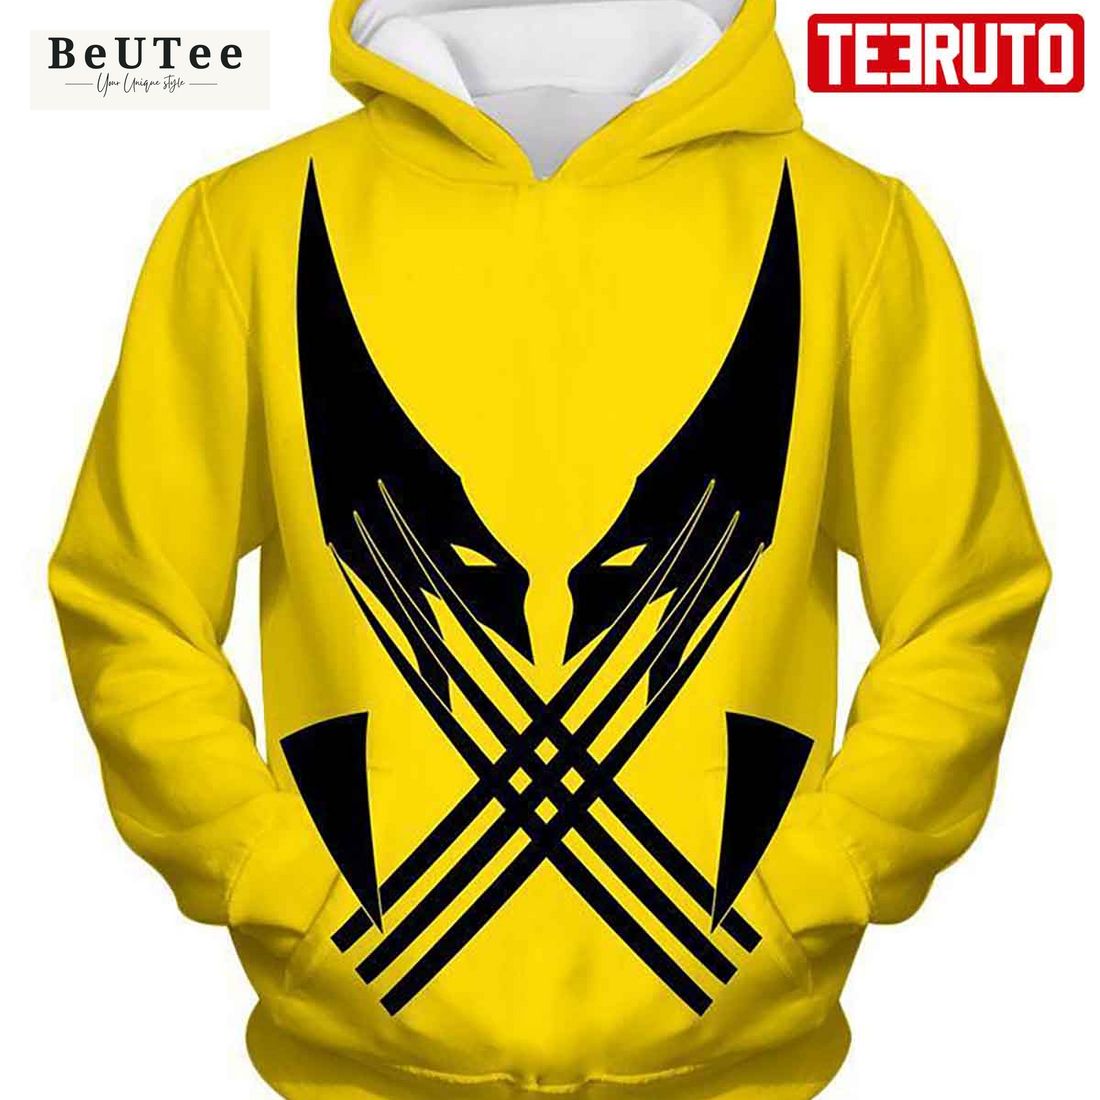 best mutant hero wolverine promo yellow hd 3d aop hoodie 1 GK003